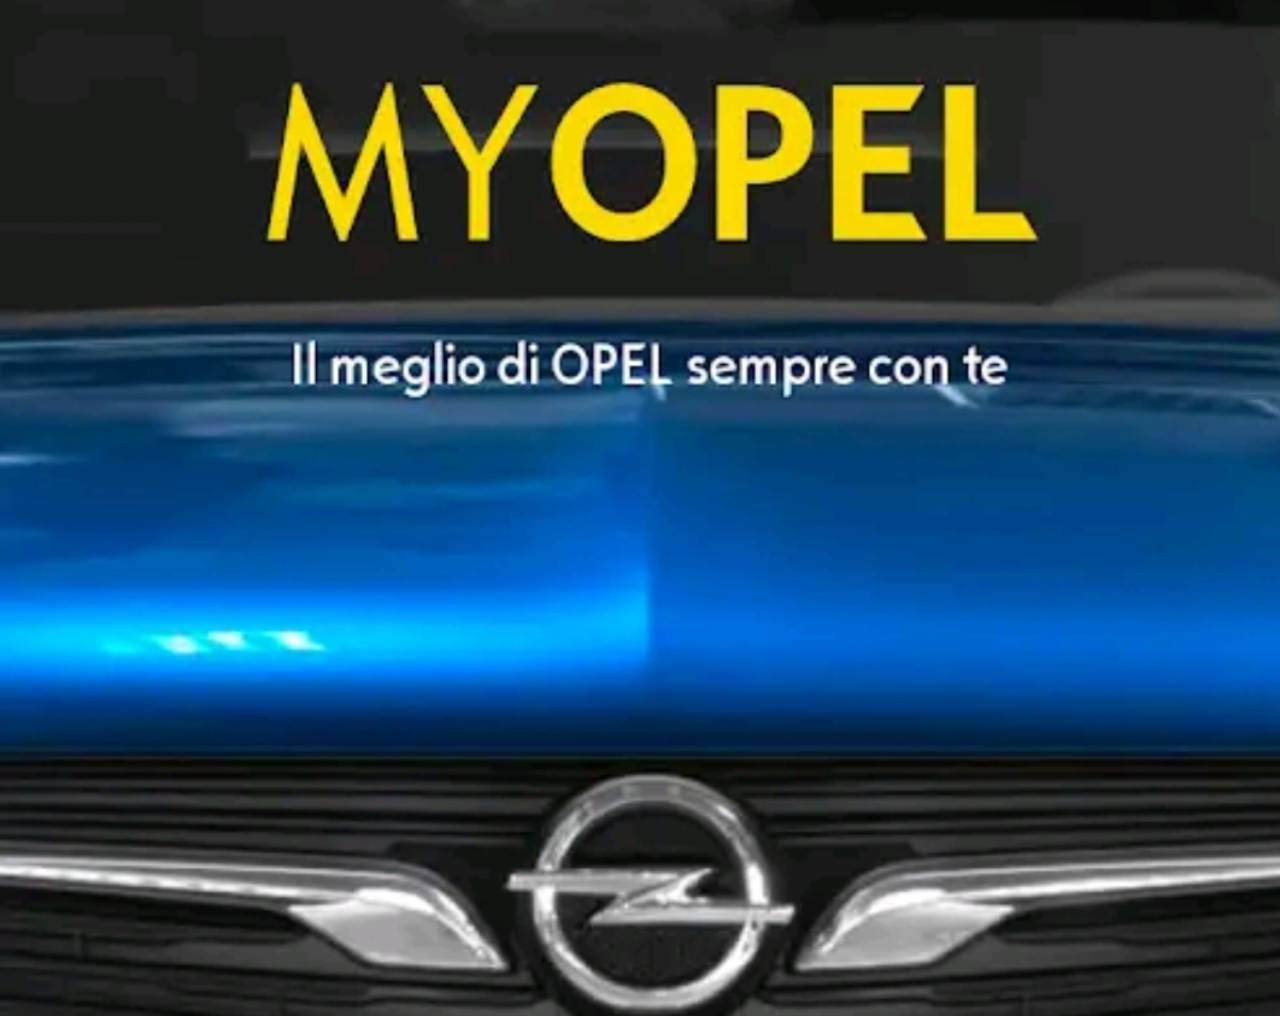 MyOpel